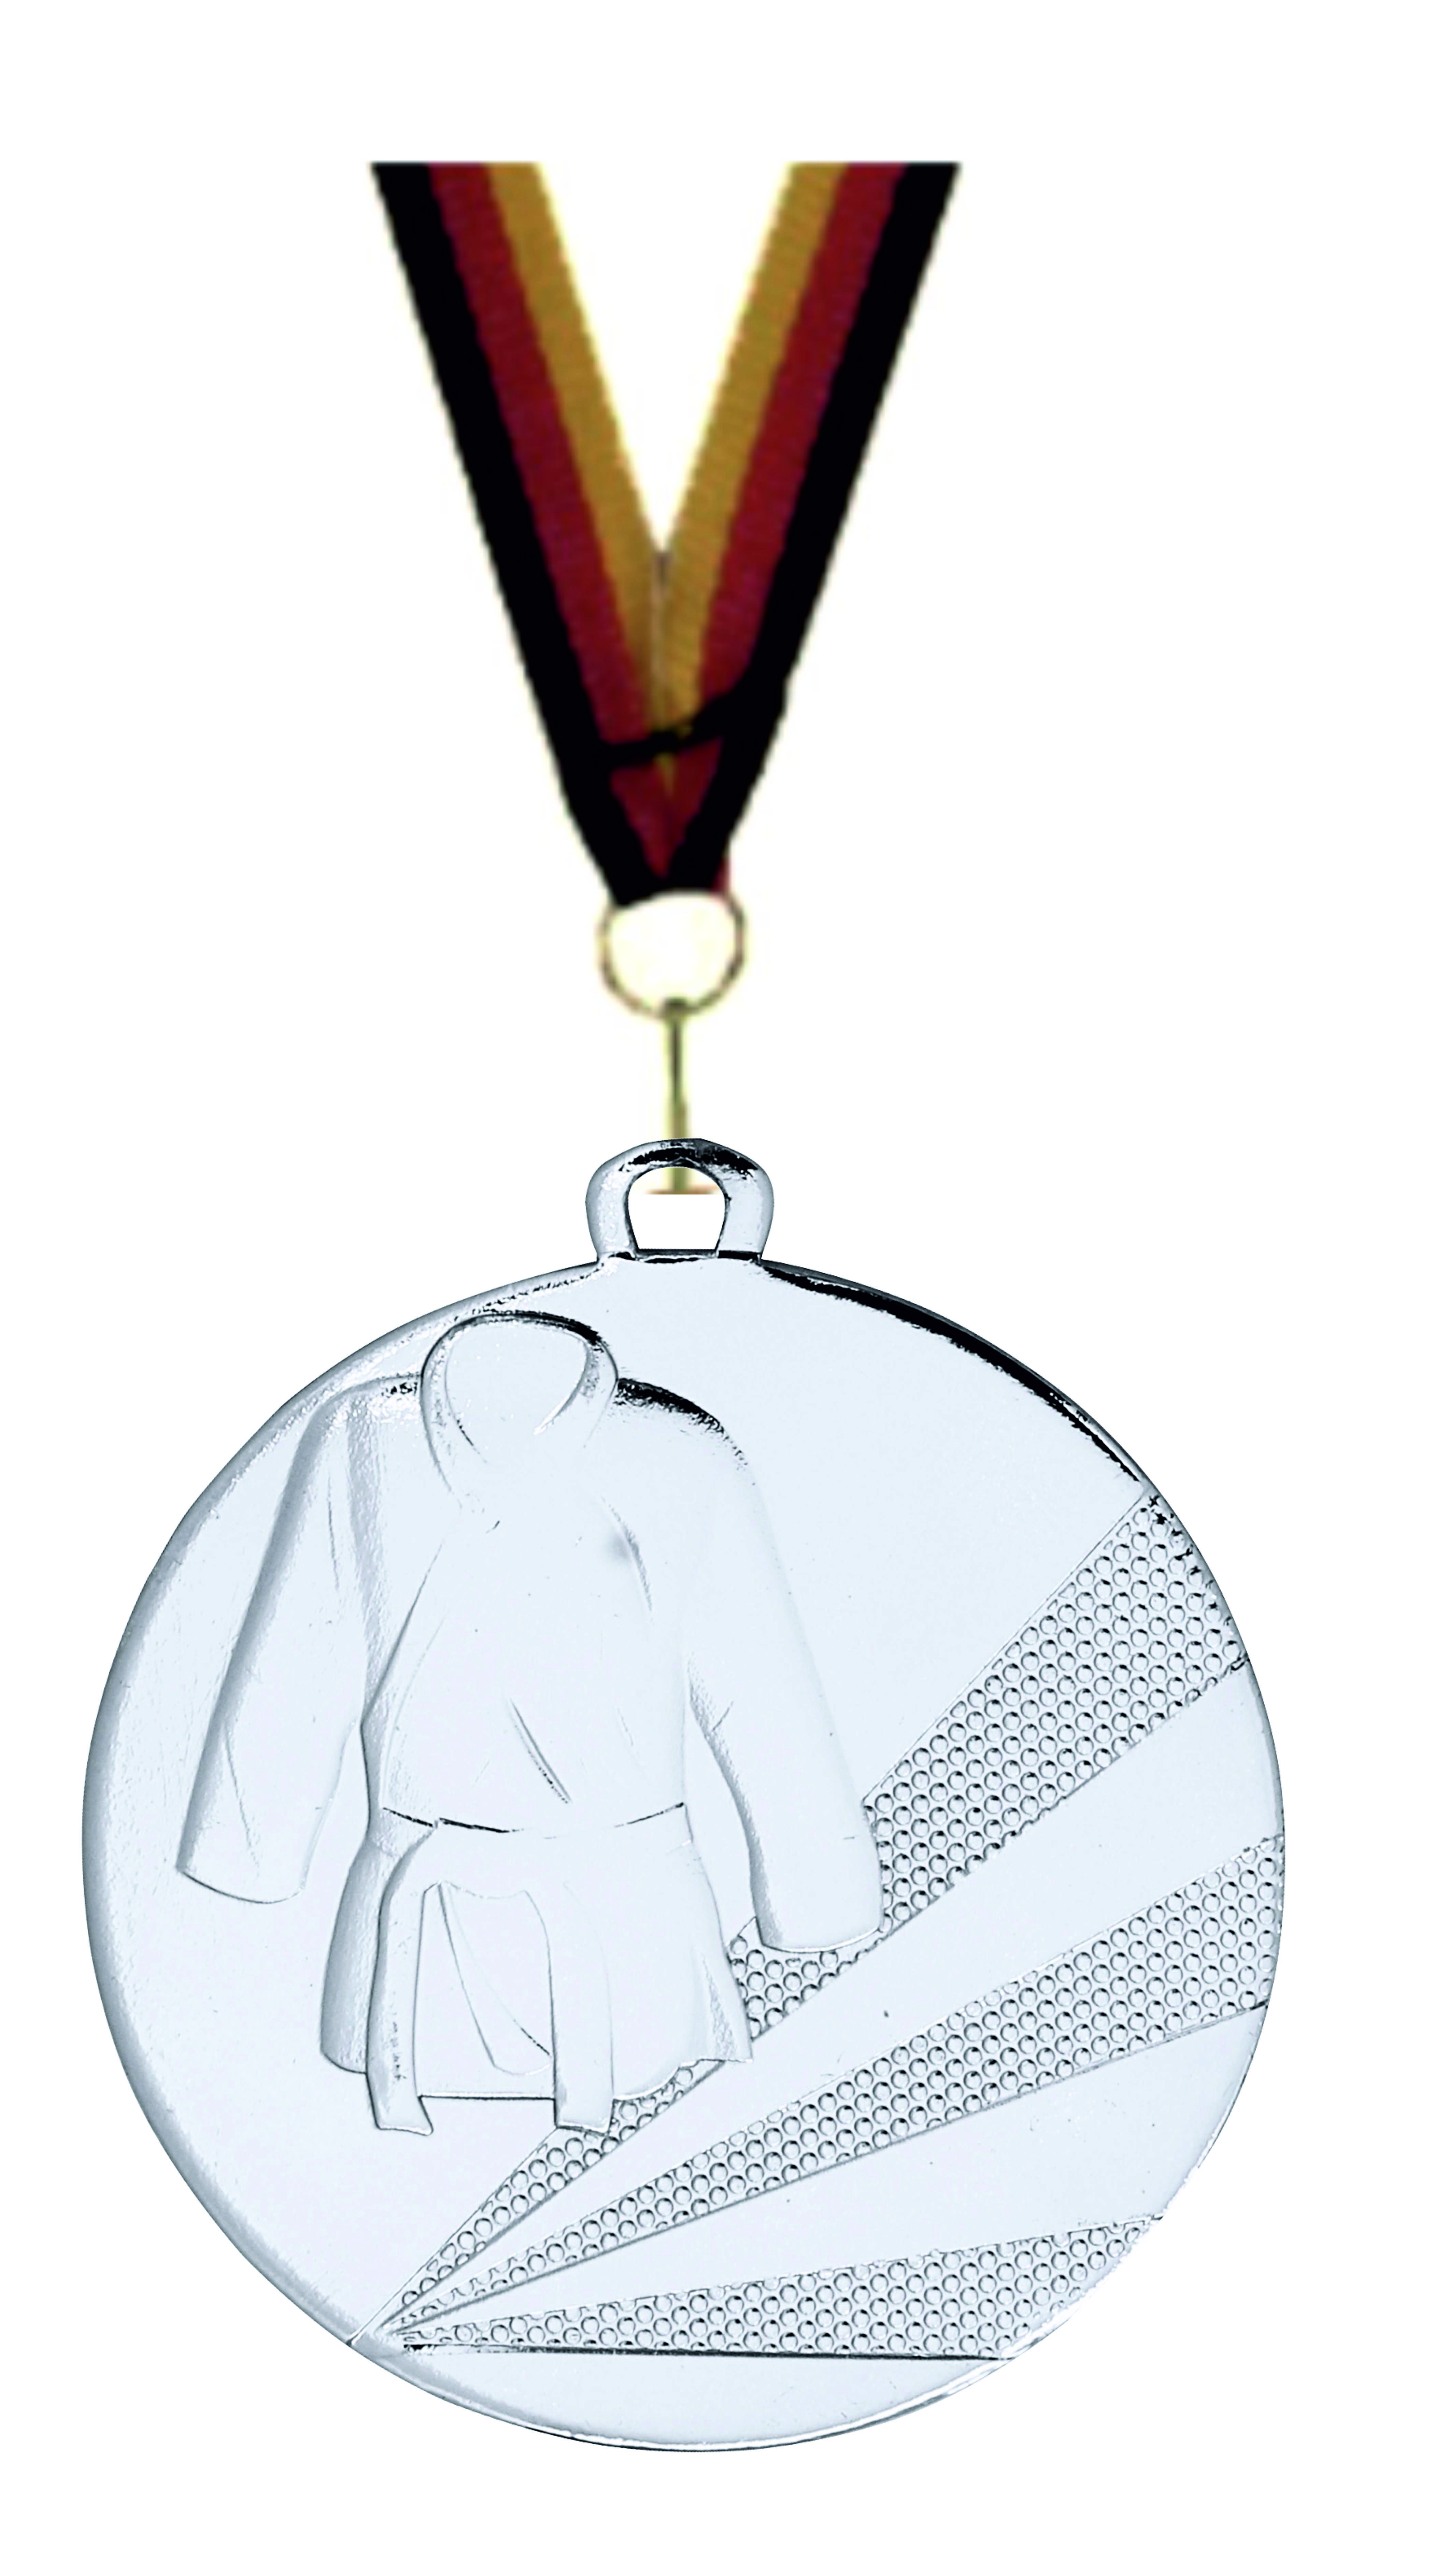 Judo-Kampfsport-Medaille D112D inkl. Band u. Beschriftung Silber Fertig montiert gegen Aufpreis